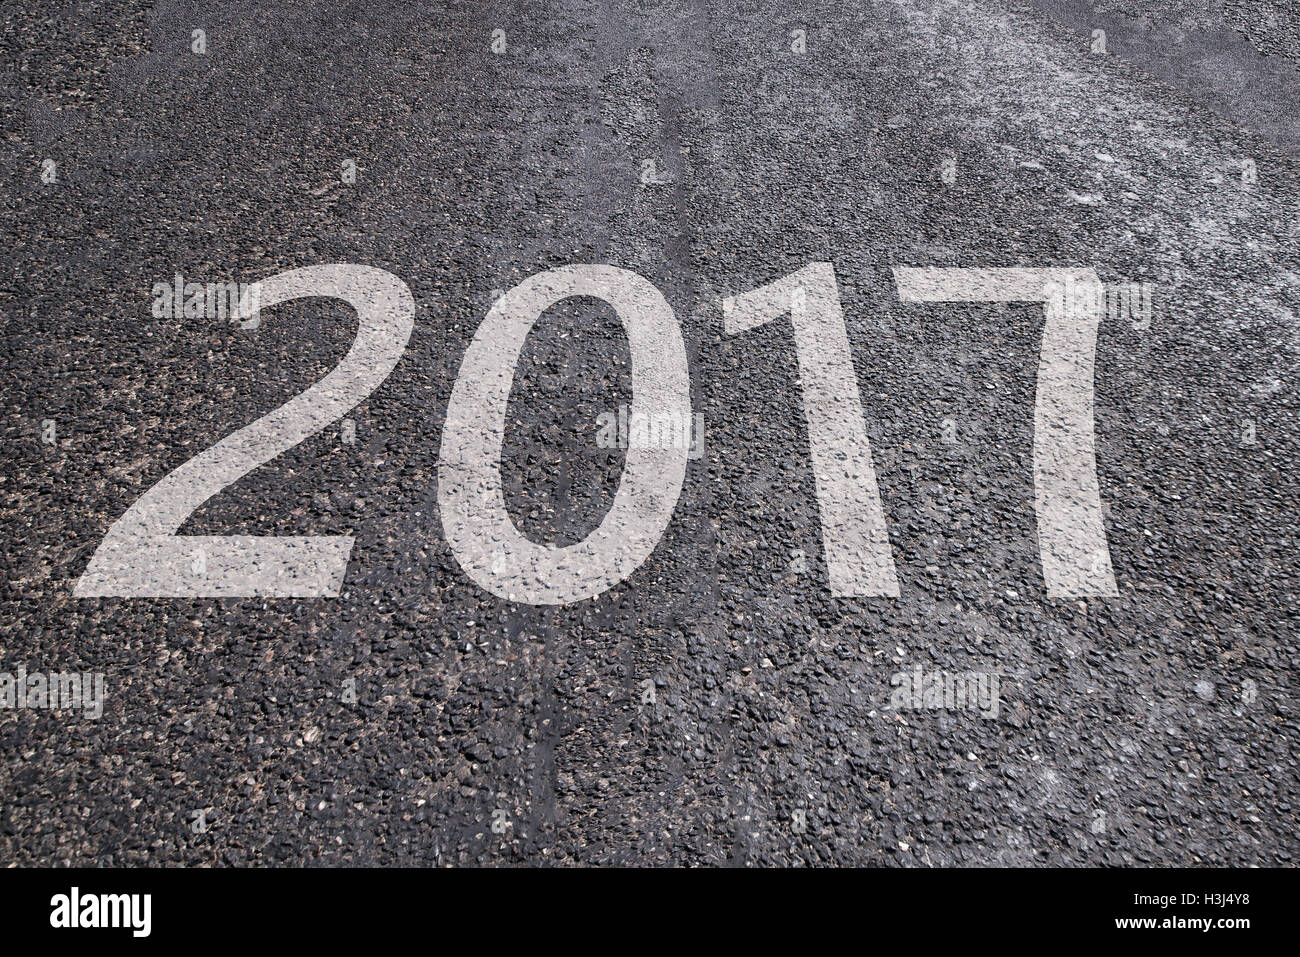 2017 texte sur route asphaltée, nouveau concept de l'année Banque D'Images